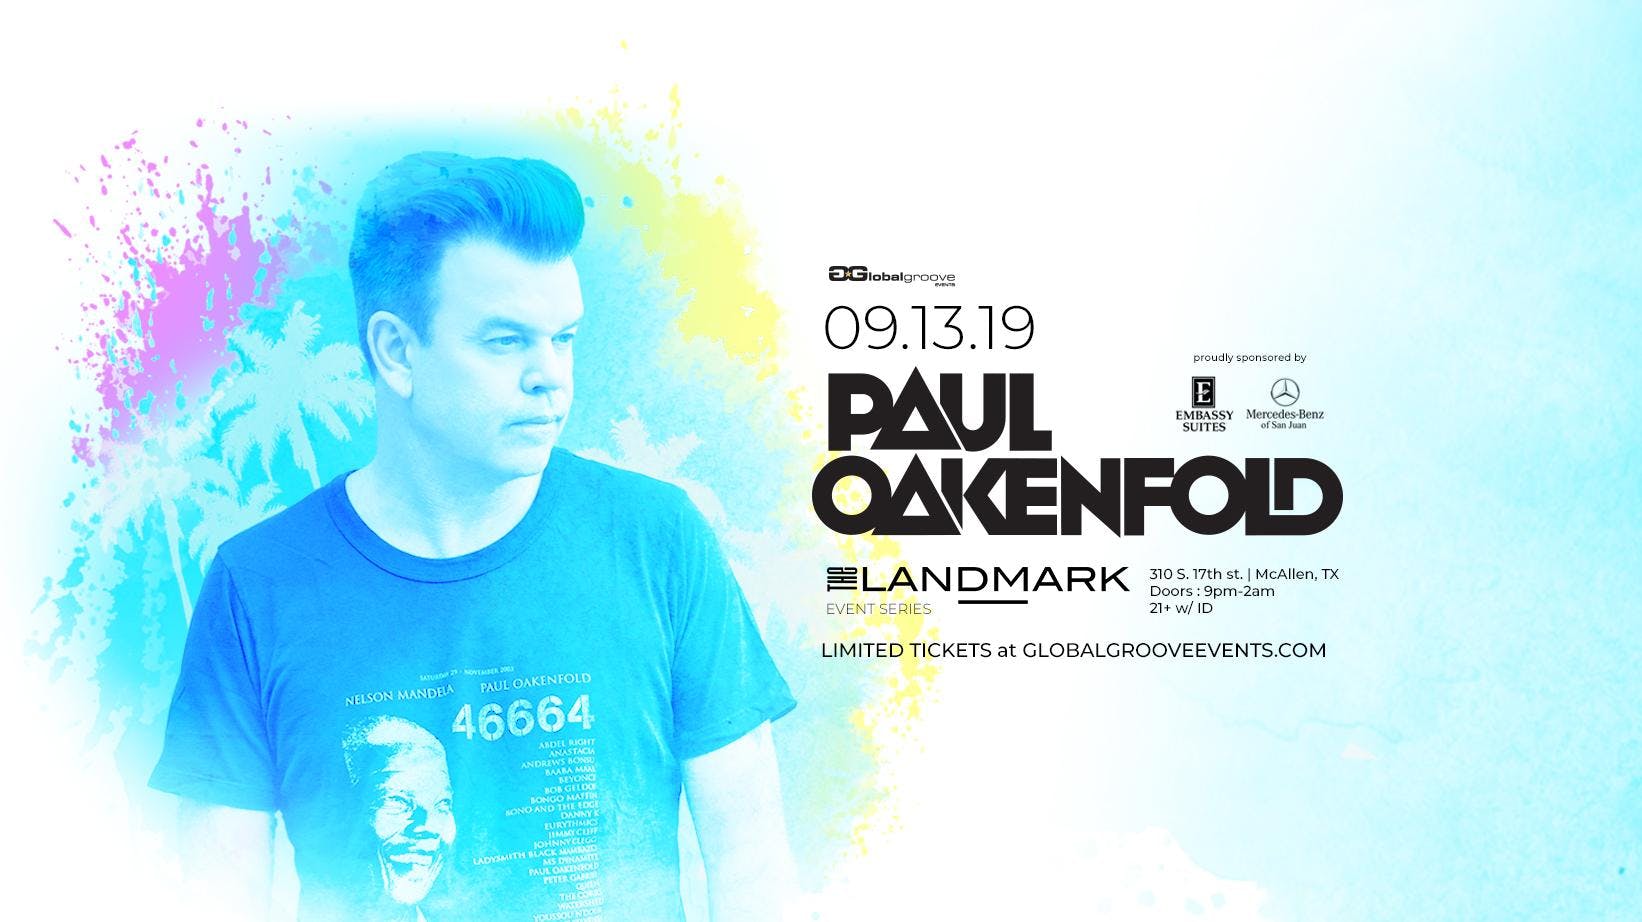 Landmark Event Series: Paul Oakenfold